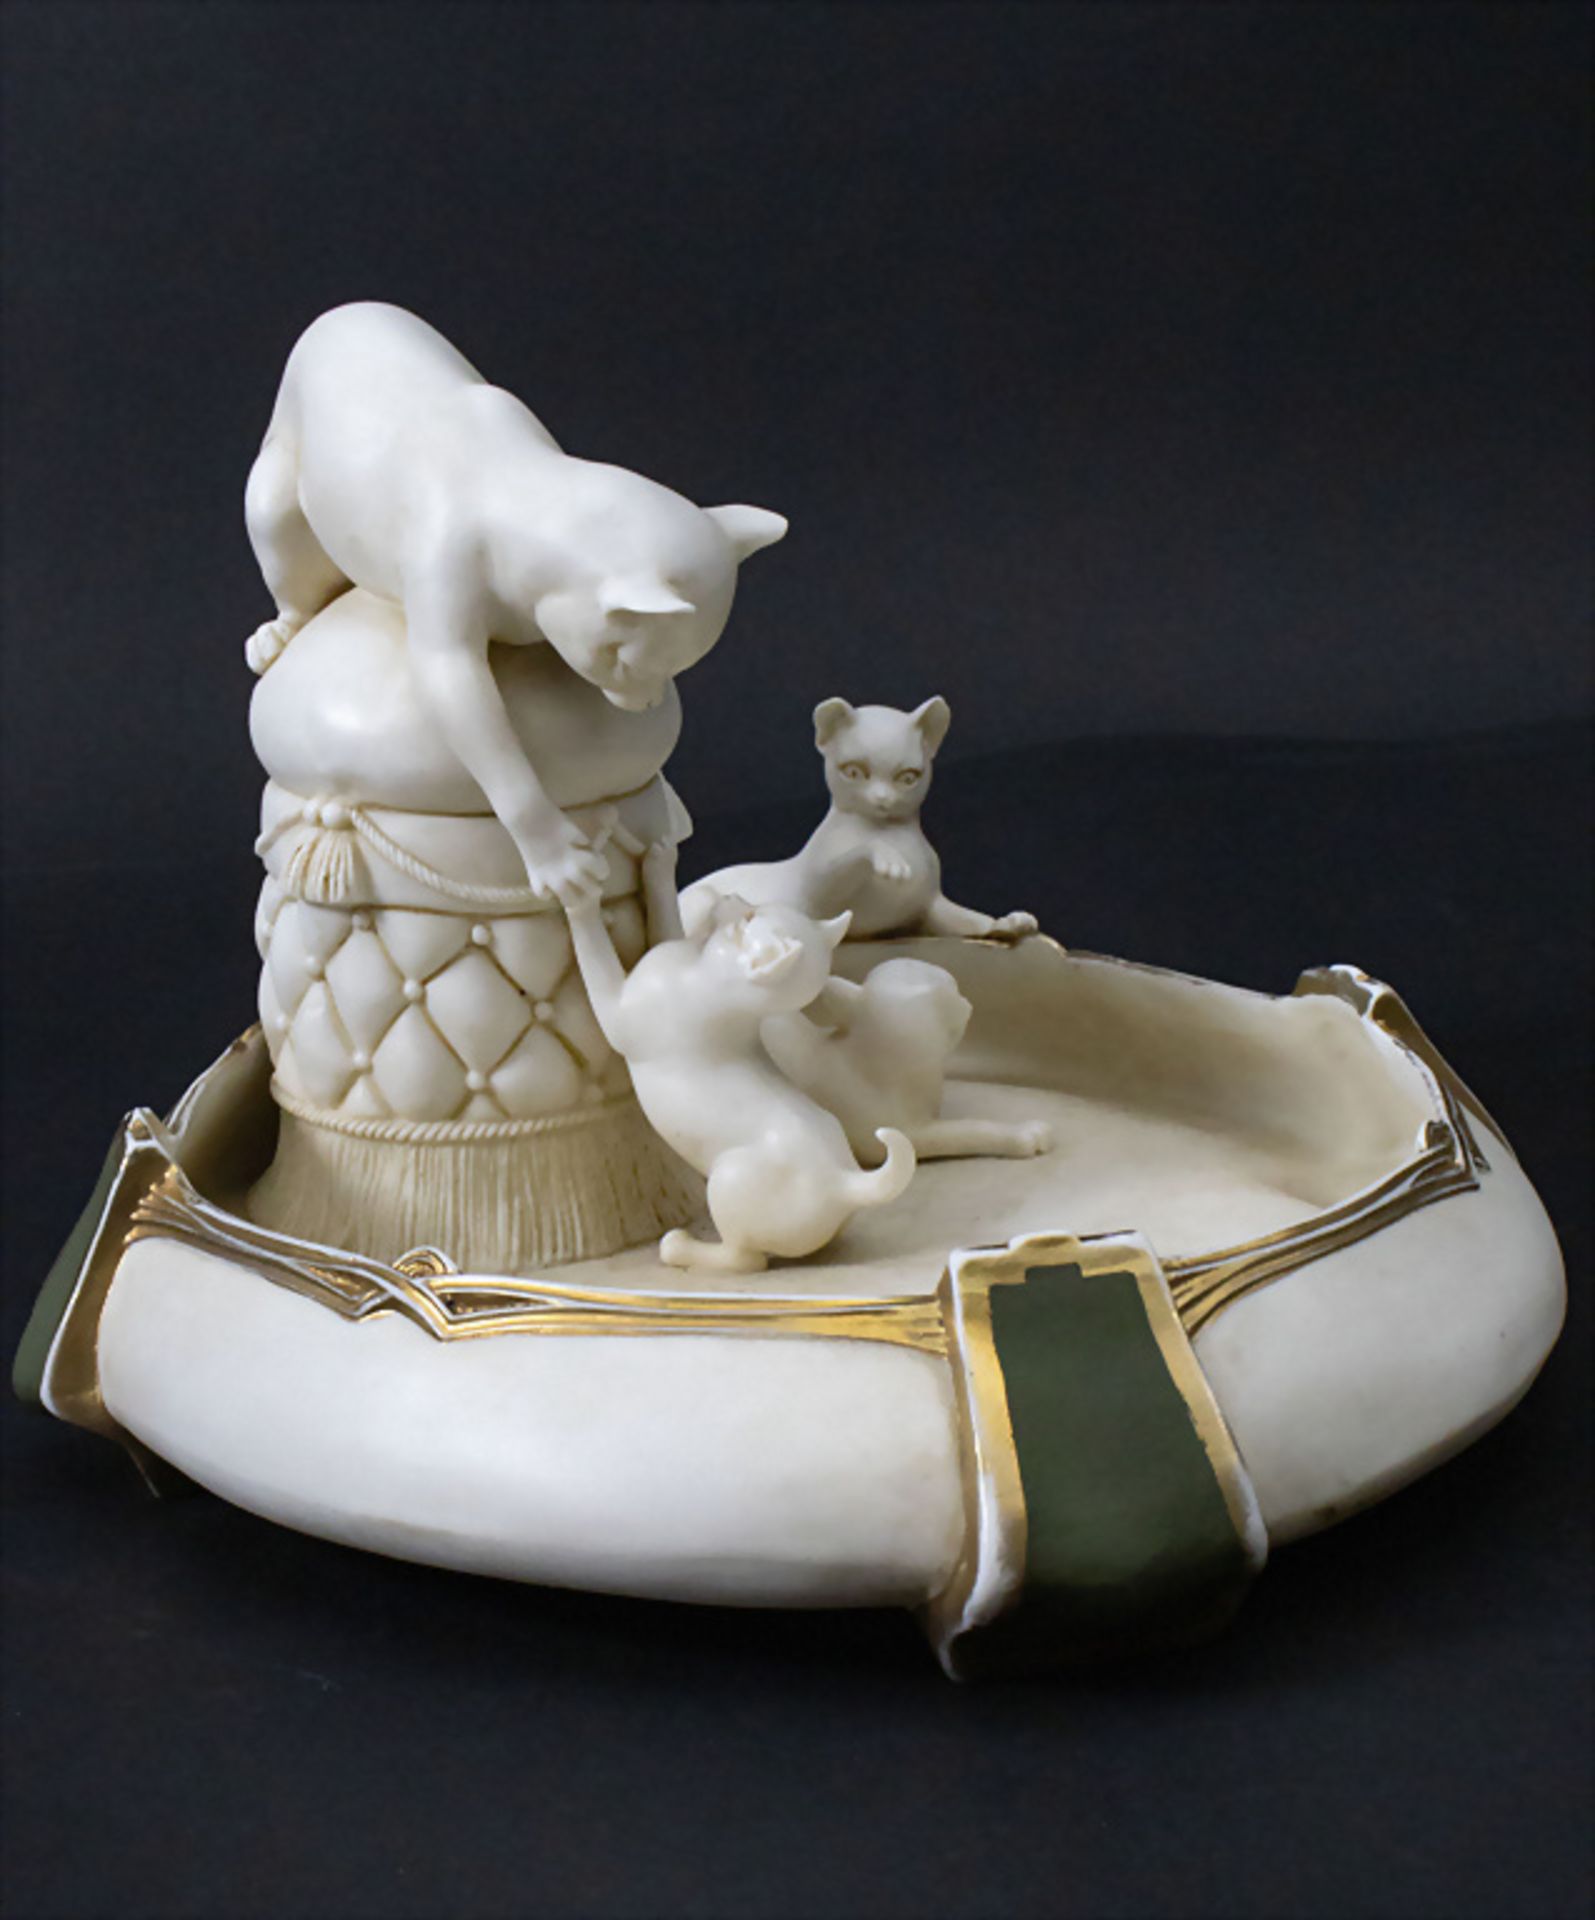 Jugendstil Schale mit 4 spielenden Katzen / An Art Nouveau bowl with 4 playing cats, E. & A. ... - Image 2 of 8